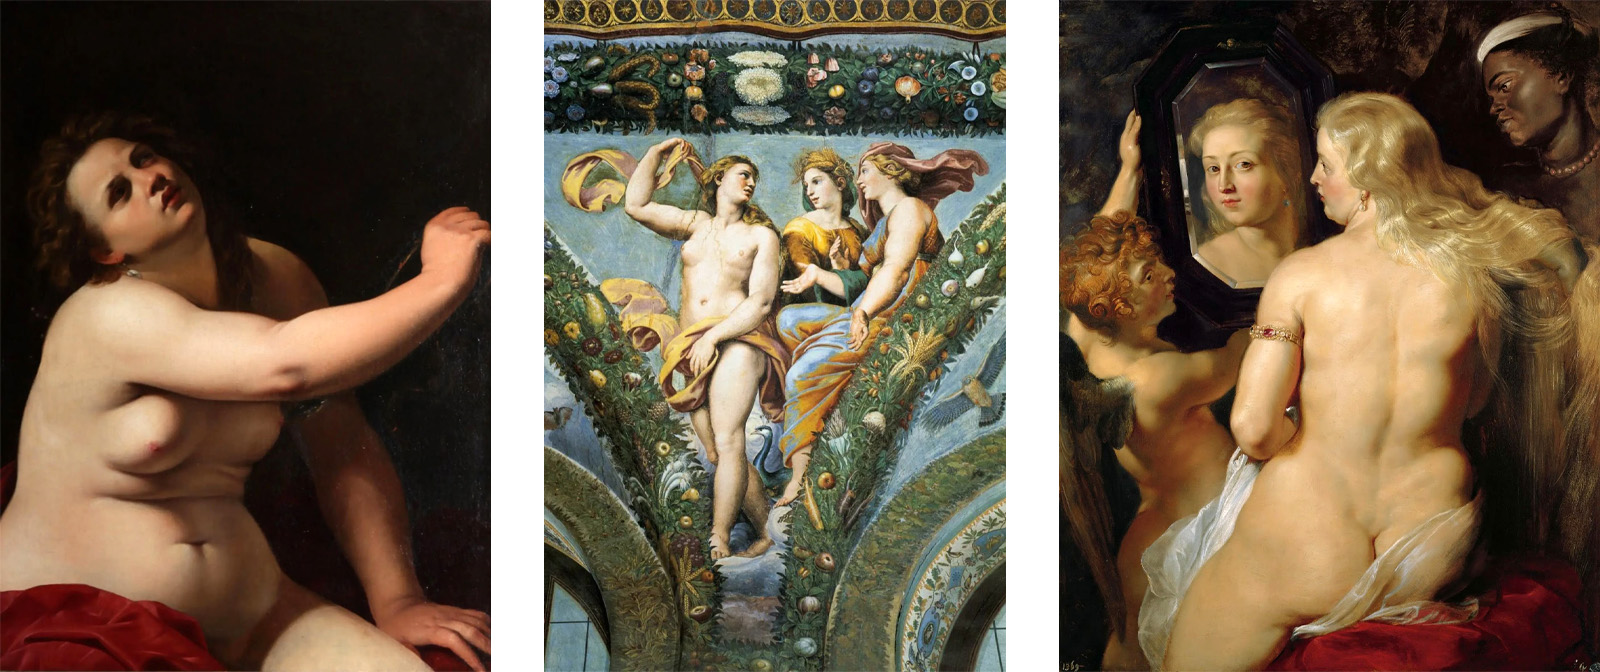 Очаровательные толстушки во всей красе на картинах знаменитых художников от древности до наших дней